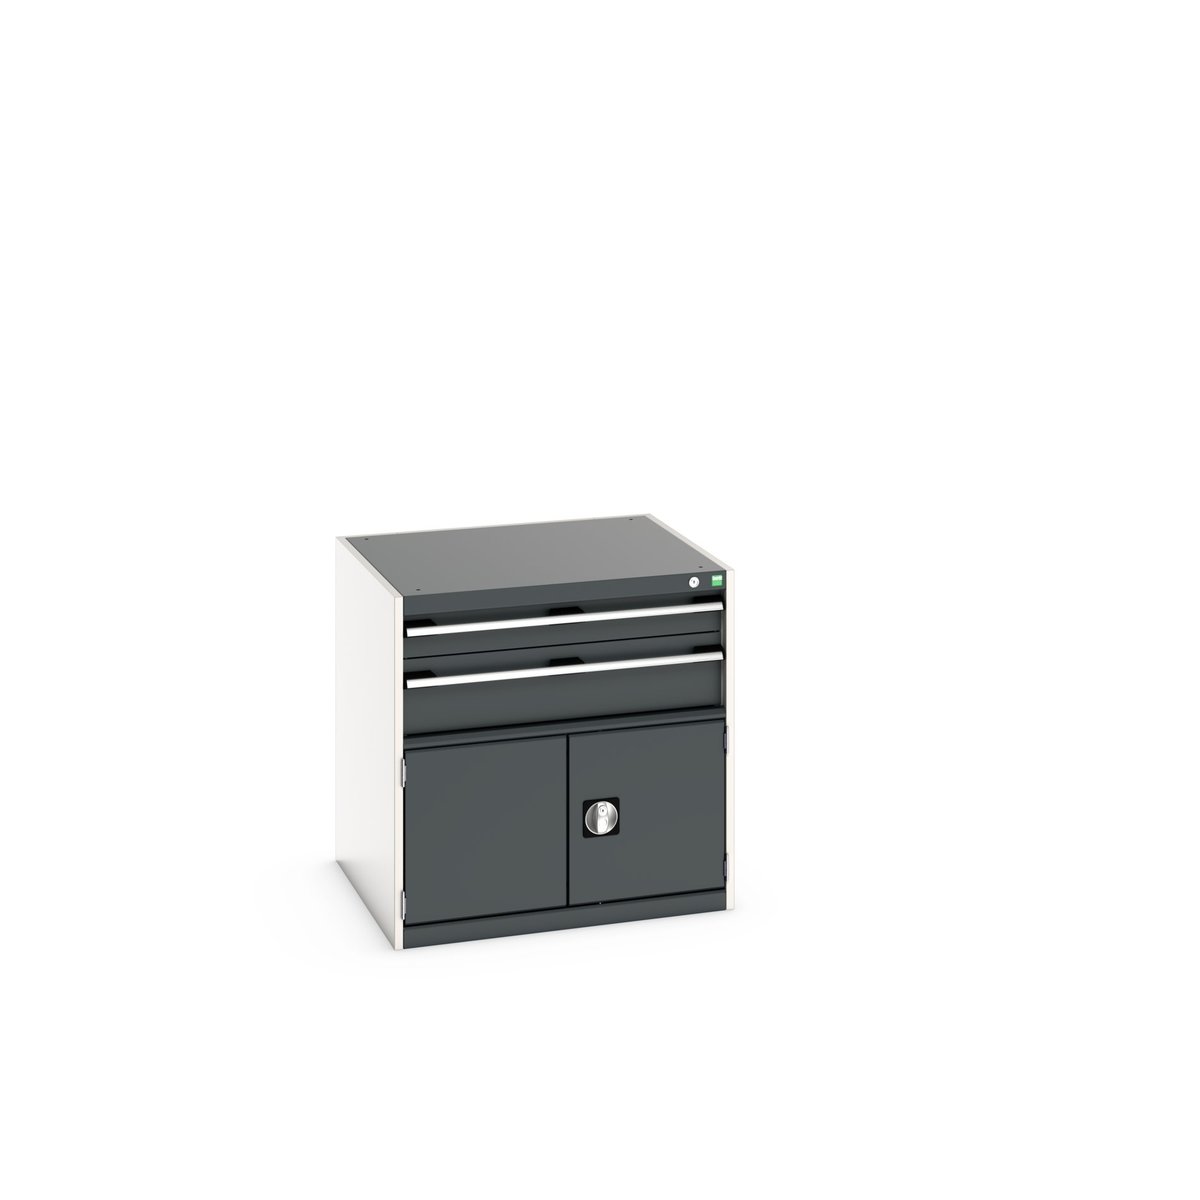 40028097. - cubio drawer-door cabinet